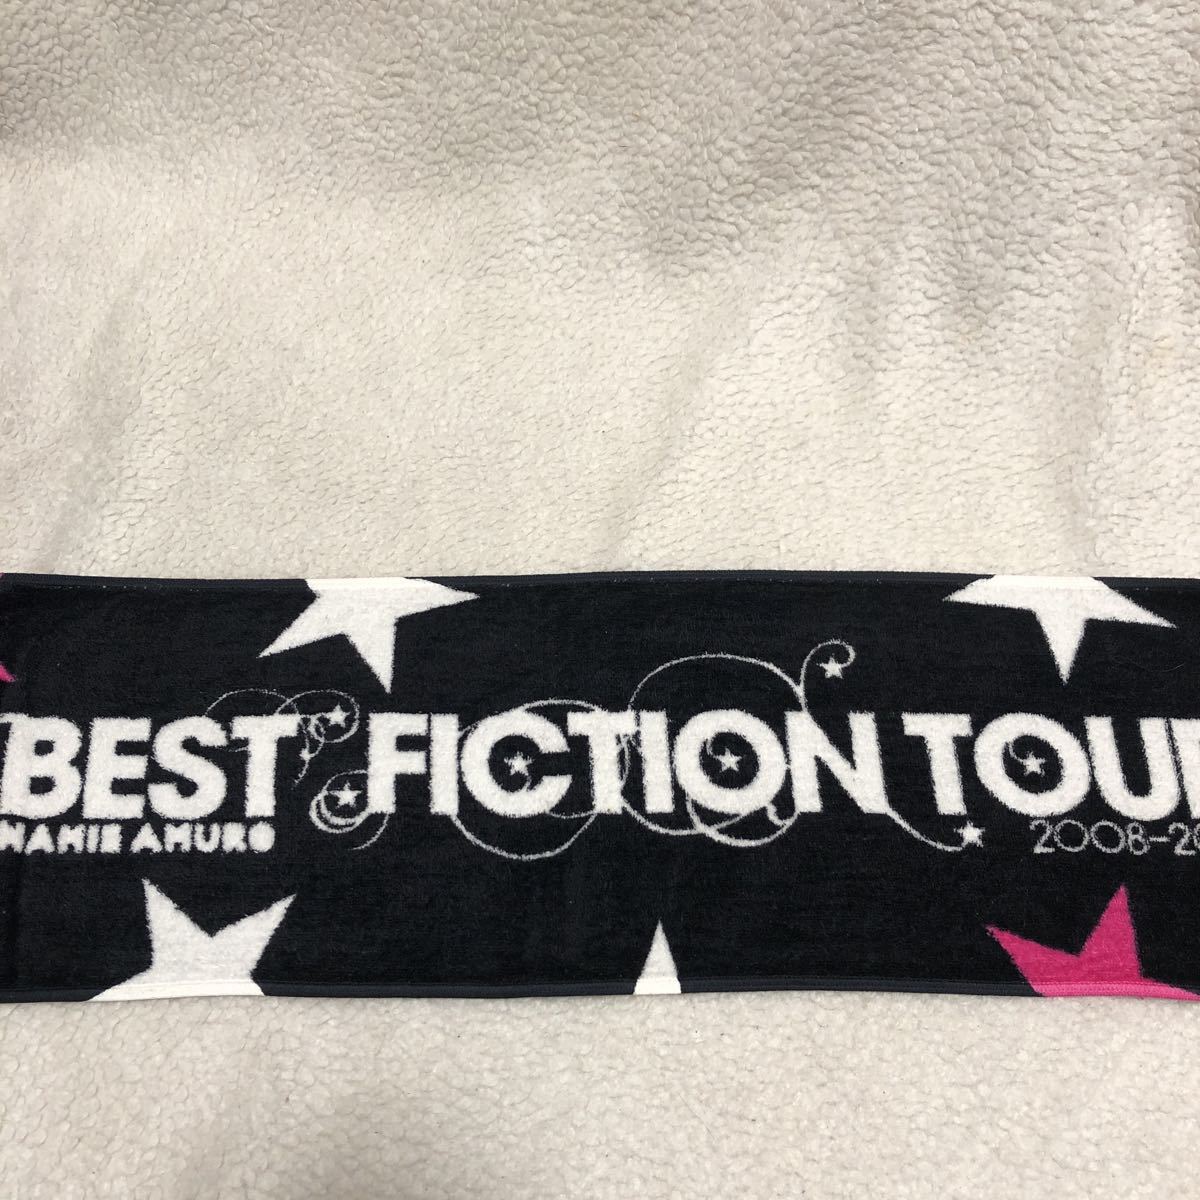 美品 1時のみ使用 安室奈美恵 マフラータオル ベストフィクション ツアー 2008-2009 BEST FICTION TOUR タオル フェイス グッズ_画像3